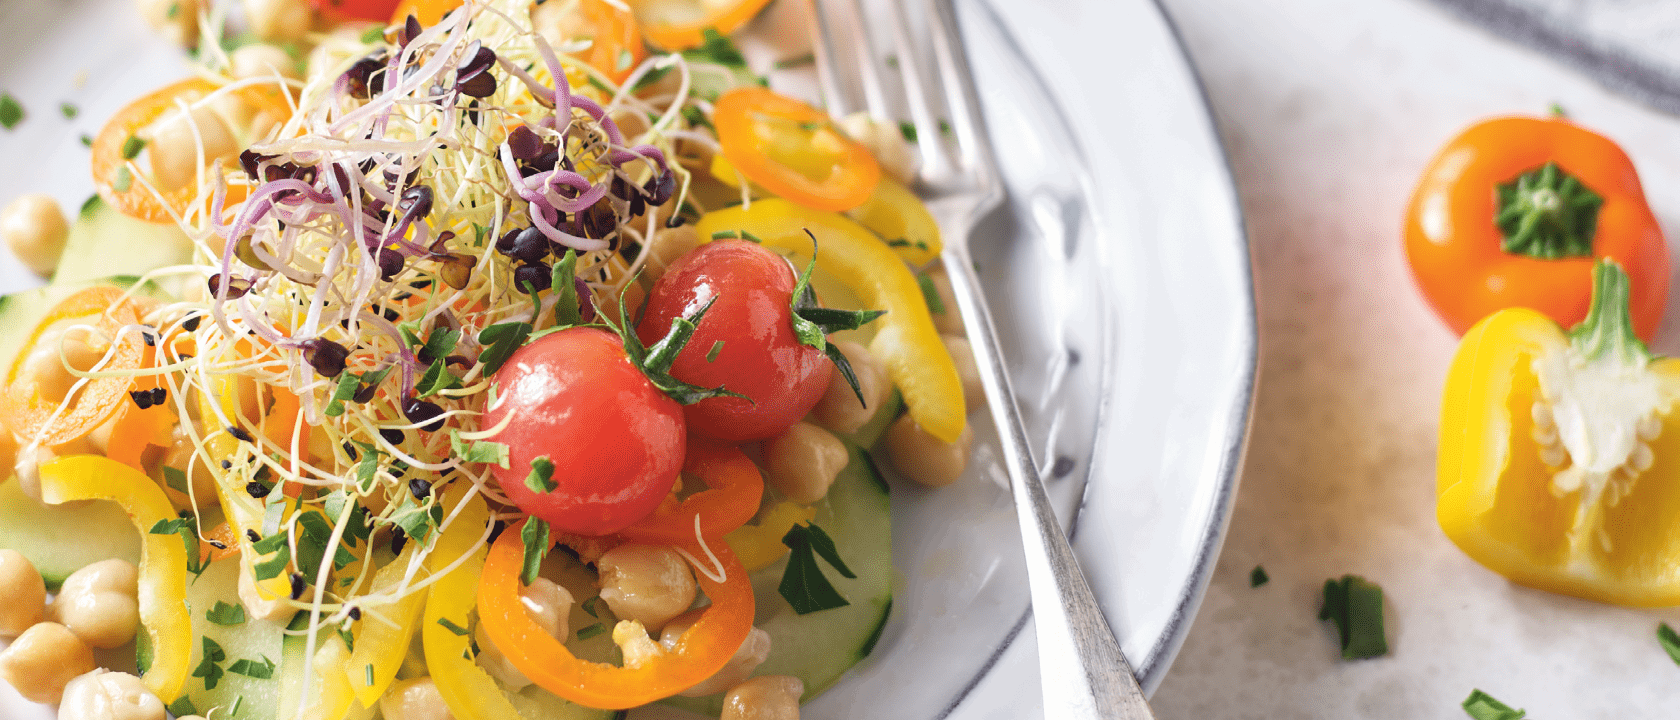 Receita de Salada de grão-de-bico com legumes e tomate  maturado em azeite, alho e ervas